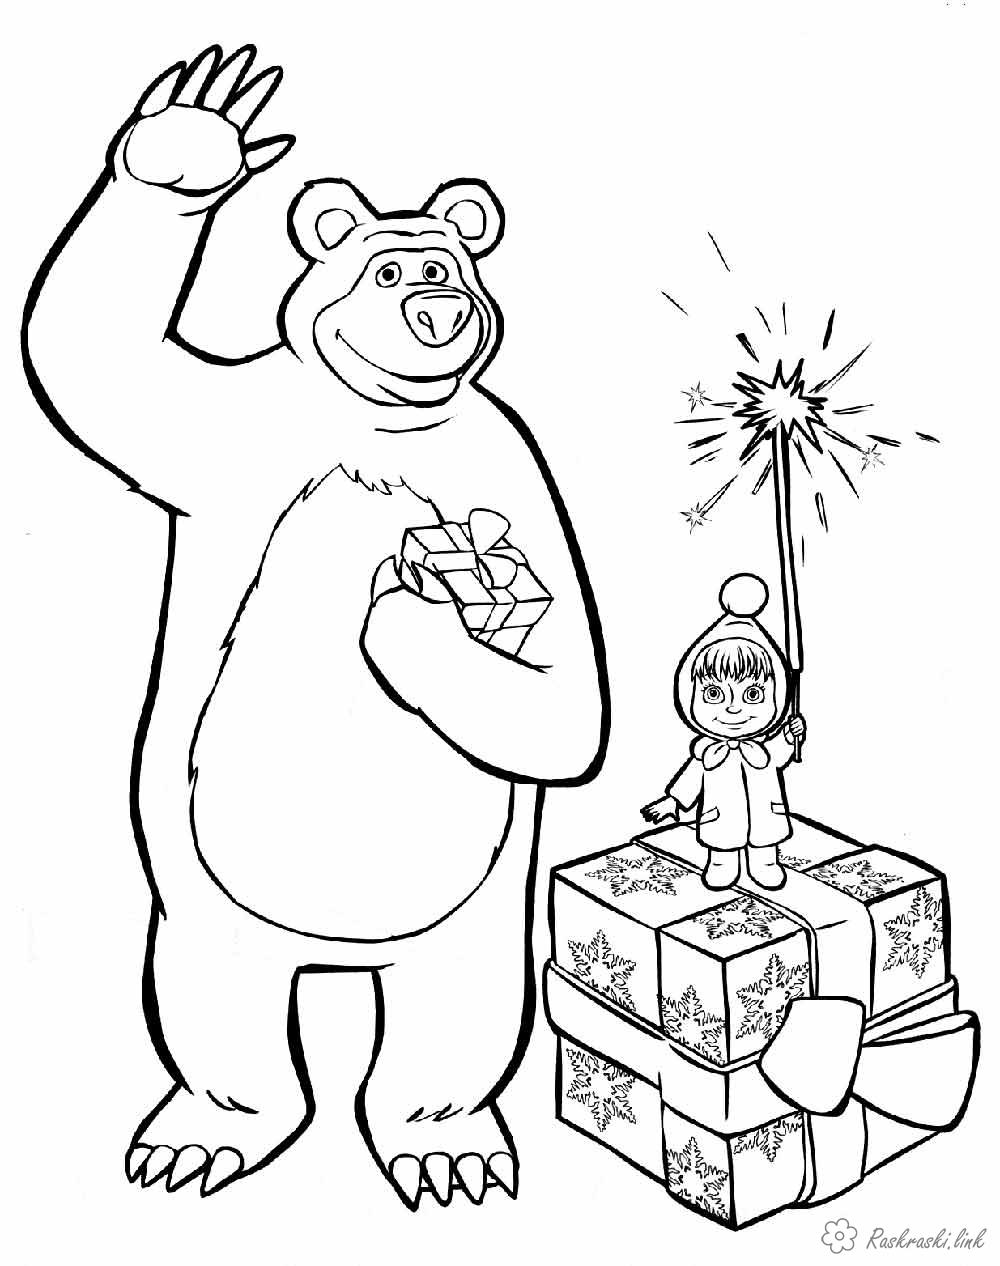 Раскраски Новый год раскраски детям, черно-белые картинки, новый год, праздник, зима, маша и медведь